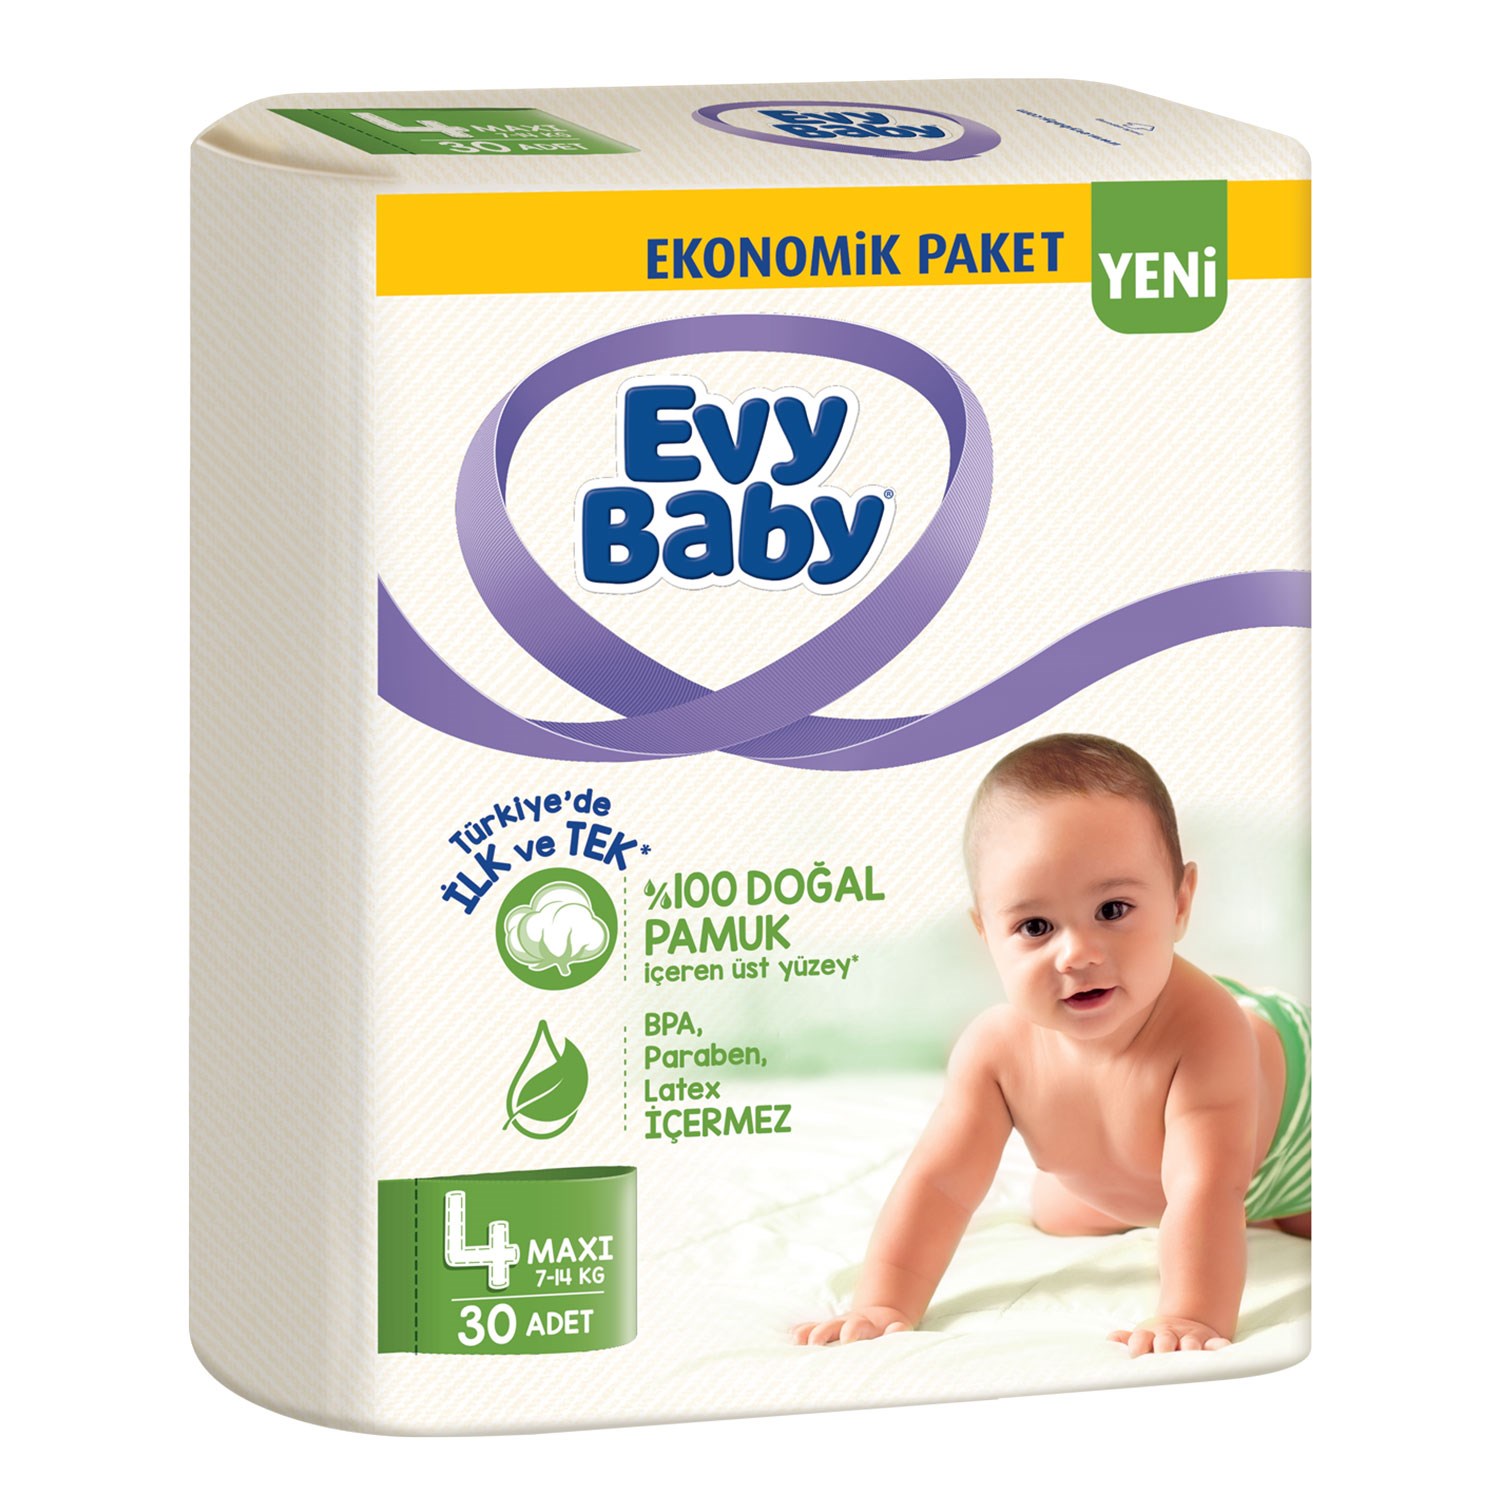 Evy Baby Bebek Bezi 4 Beden Maxi 30 Adet 7-14 Kg 